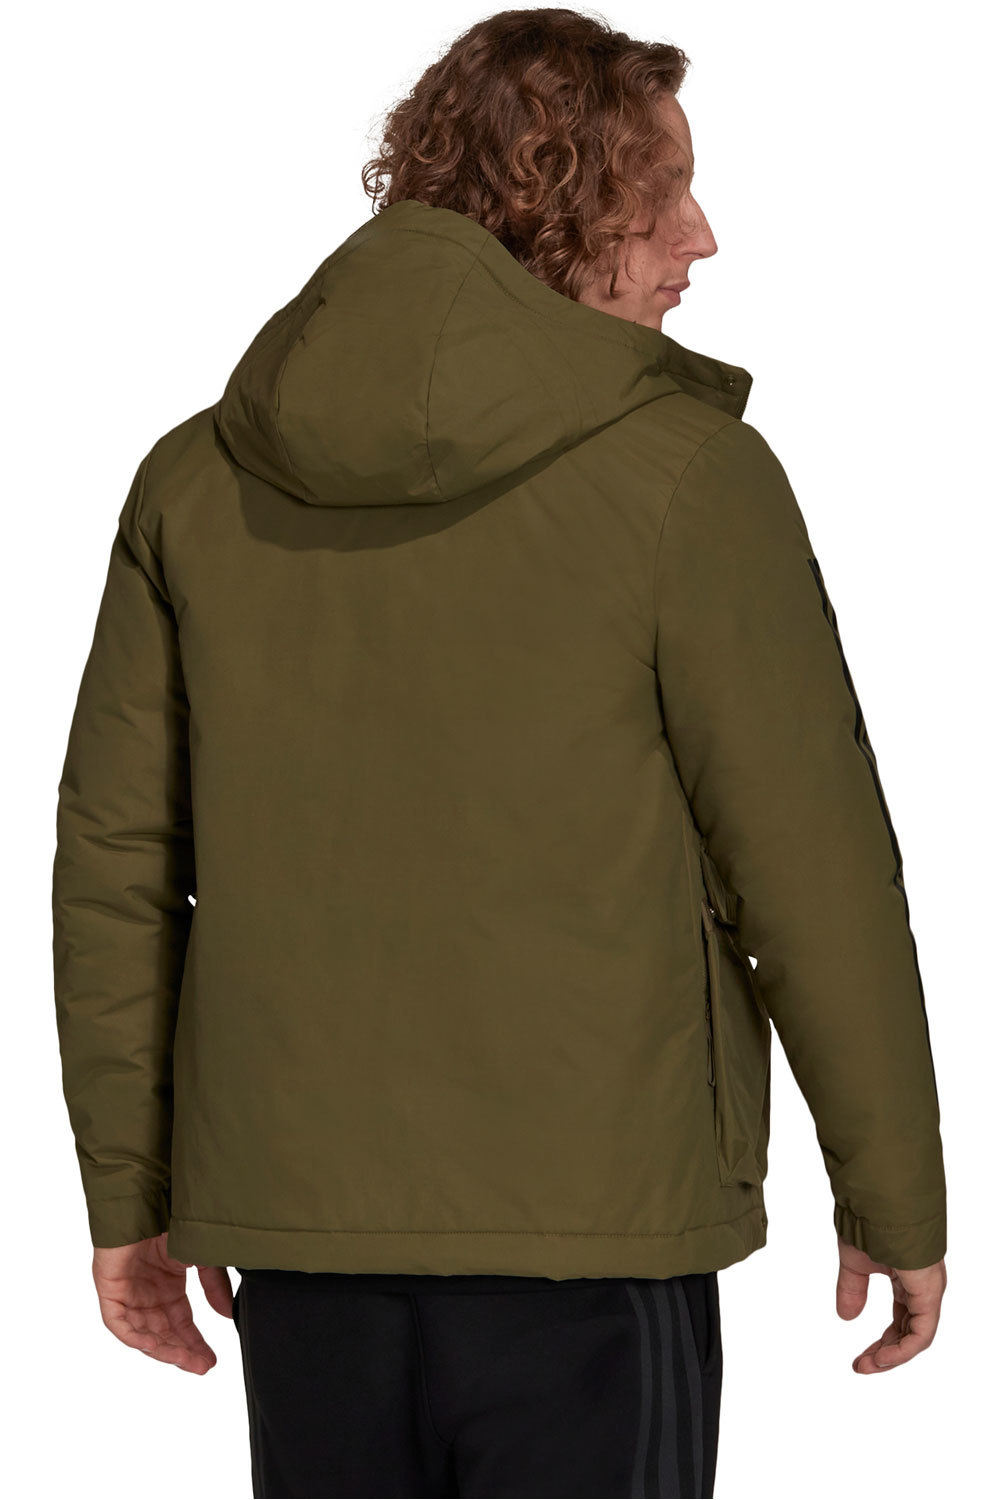 adidas chaqueta outdoor hombre Utilitas 3 bandas Unisex con capucha vista trasera